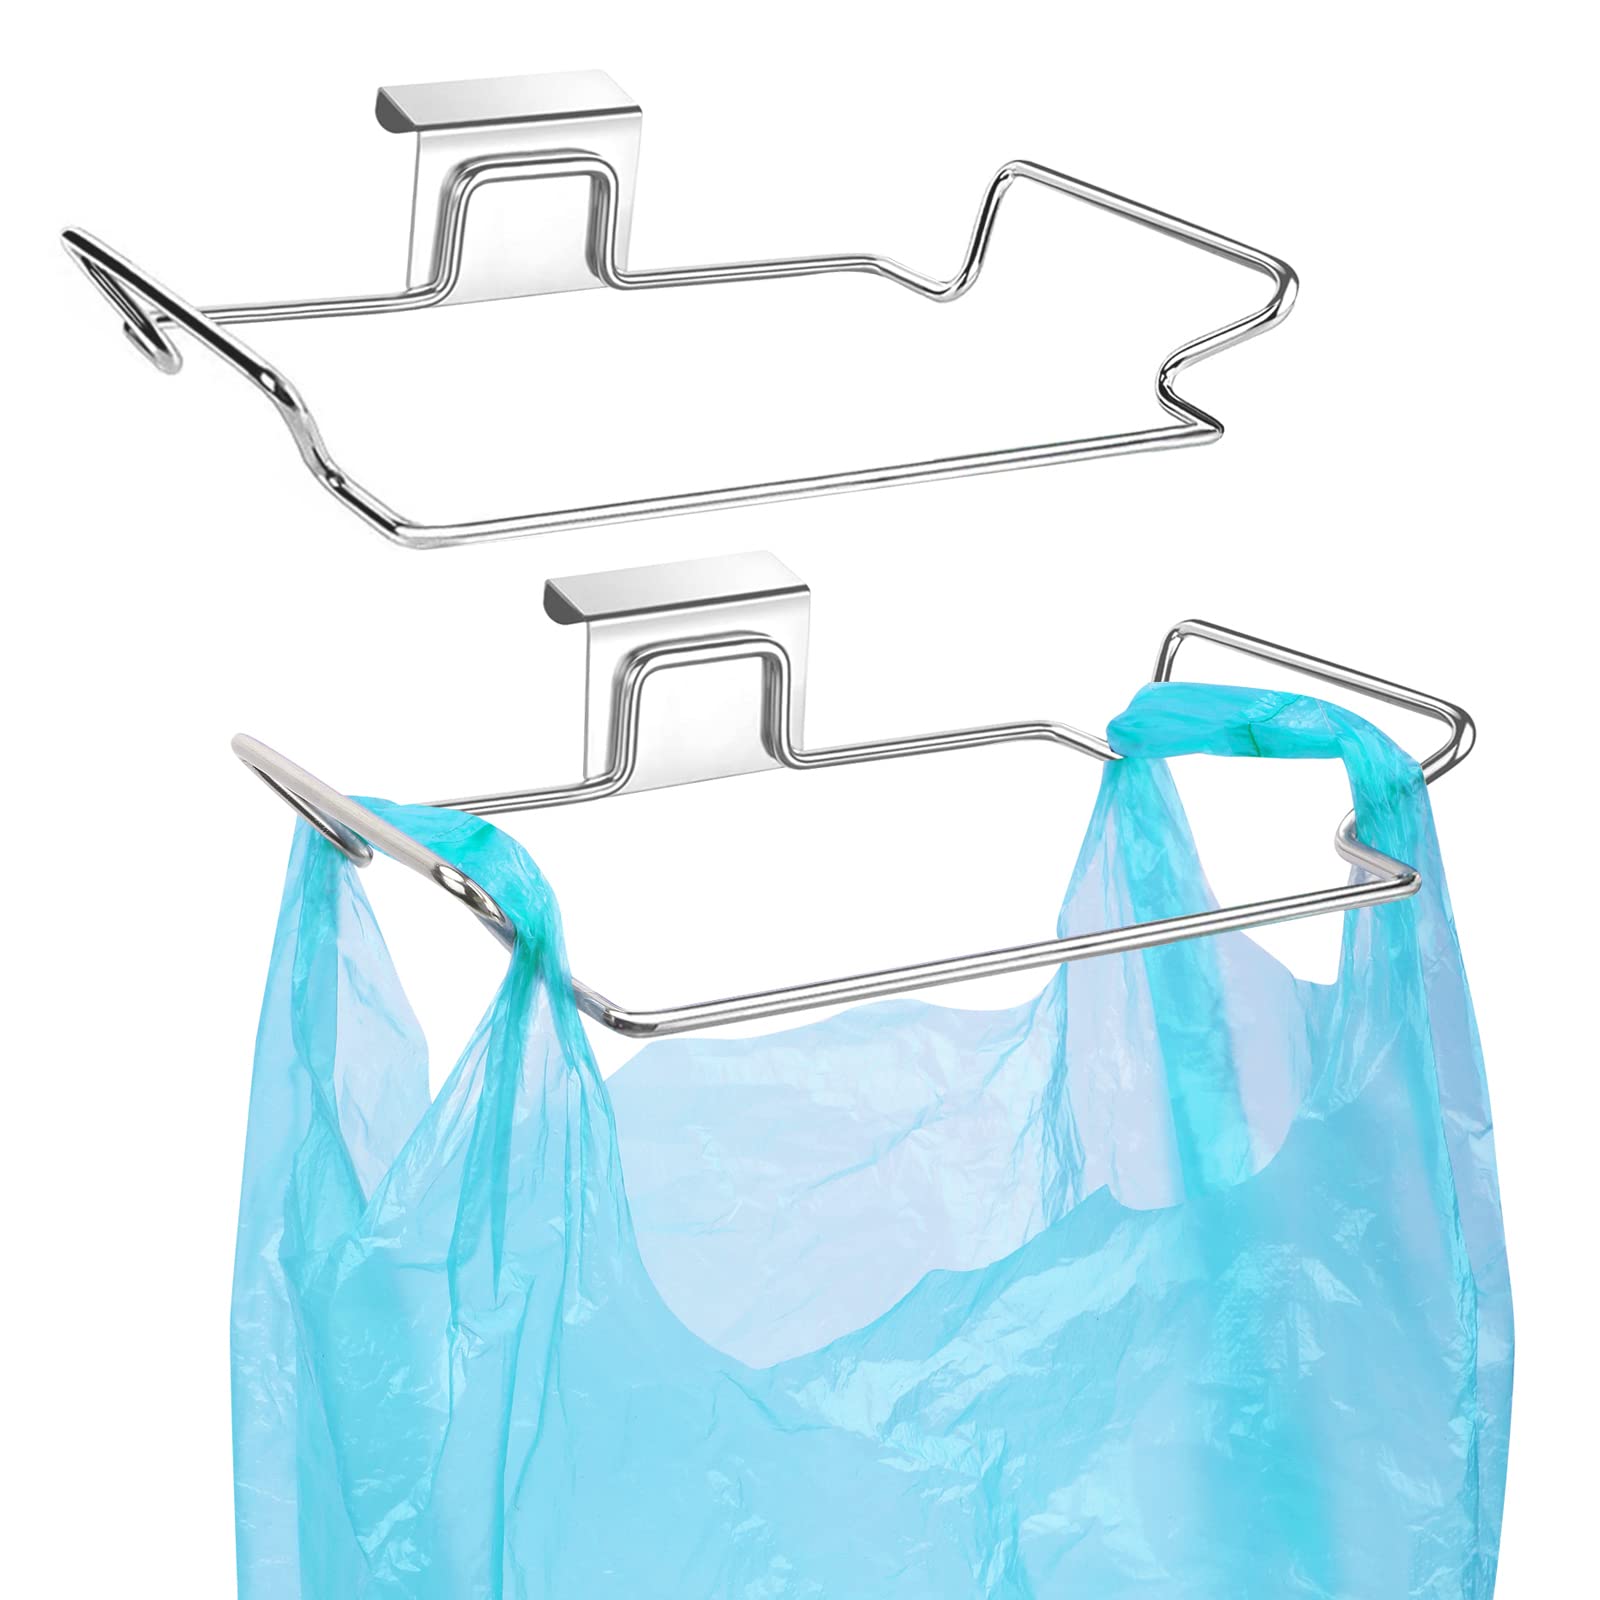 OYSIR 2 Pcs Large Stainless Steel Trash Bag Holder for Kitchen Cabinets Doors and Cupboards, Under Sink Bag Holder, Garbage Bag 